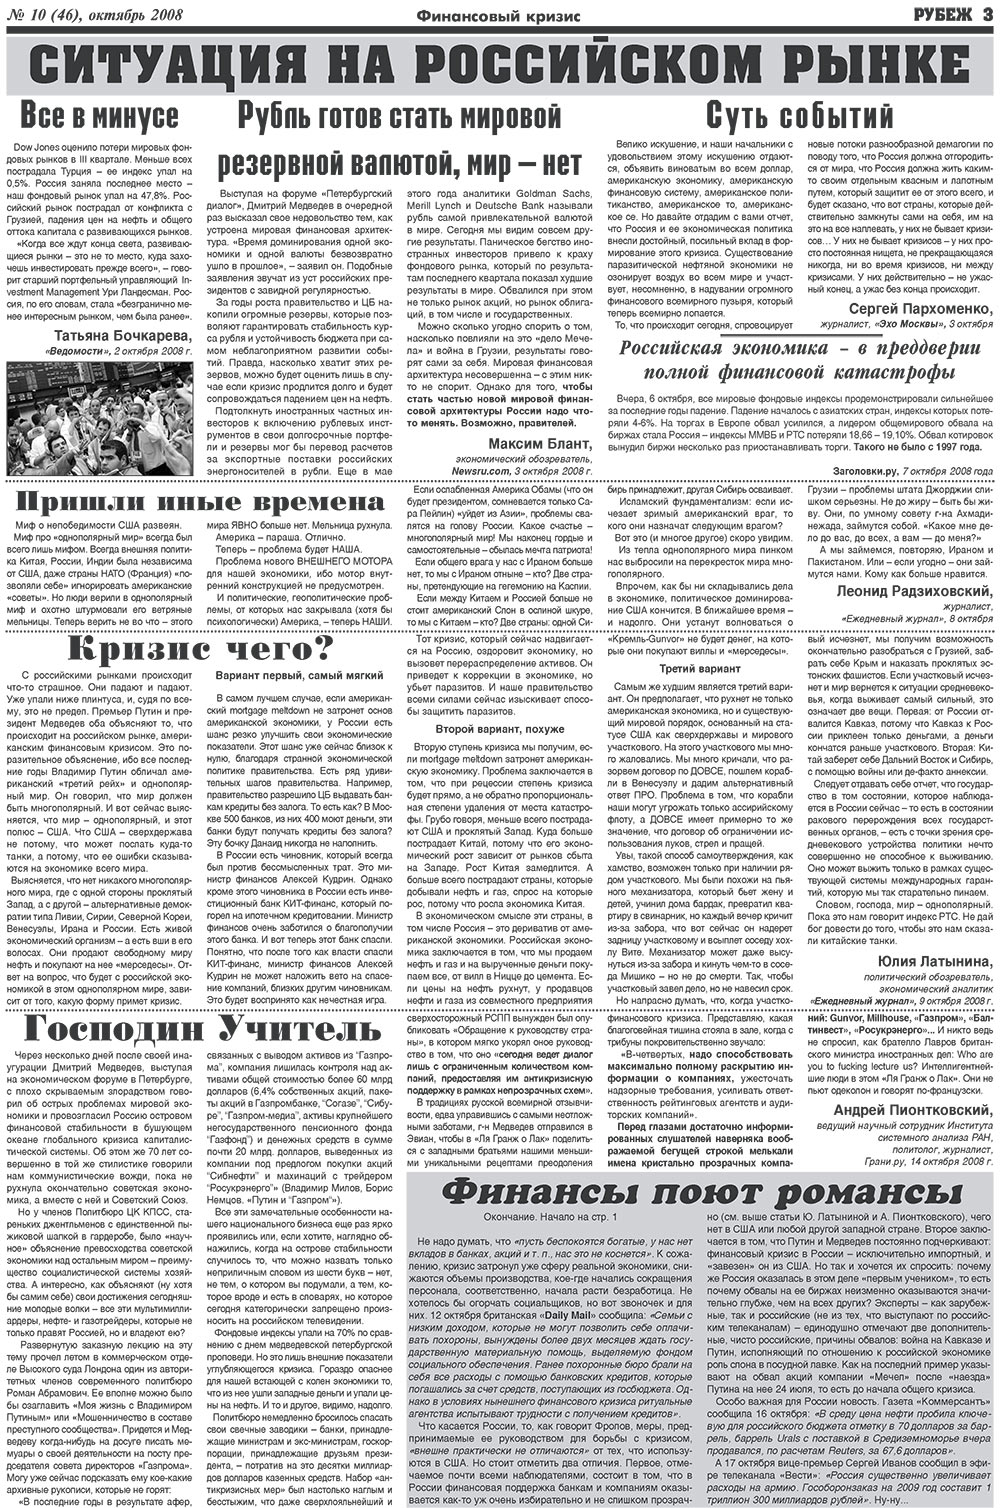 Рубеж (газета). 2008 год, номер 10, стр. 3